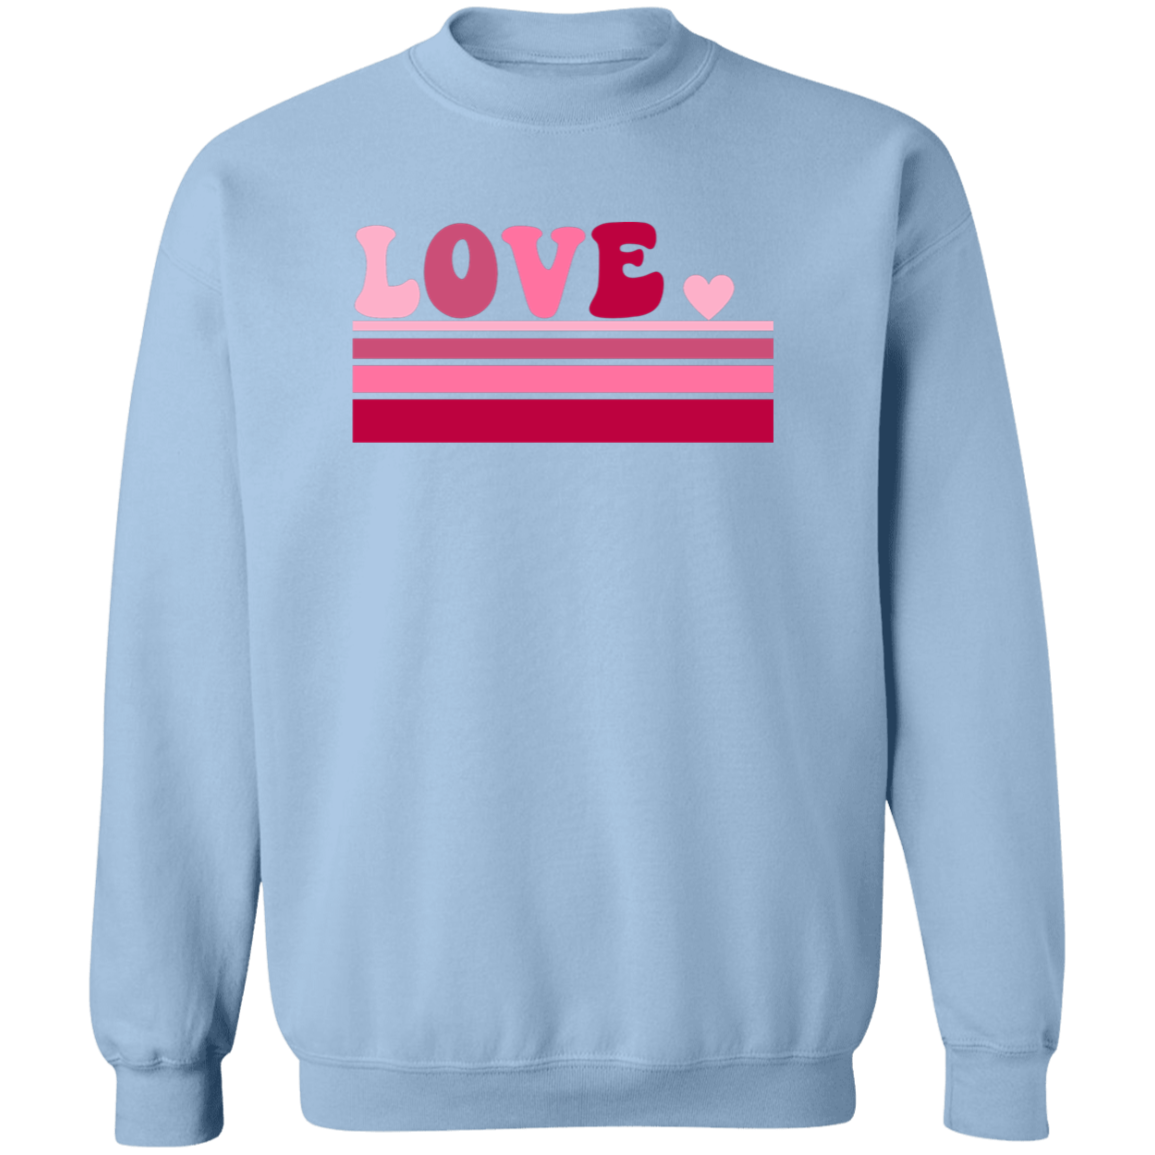 Retro Love- Ladies Sweatshirt, Valentine's Day, Winter